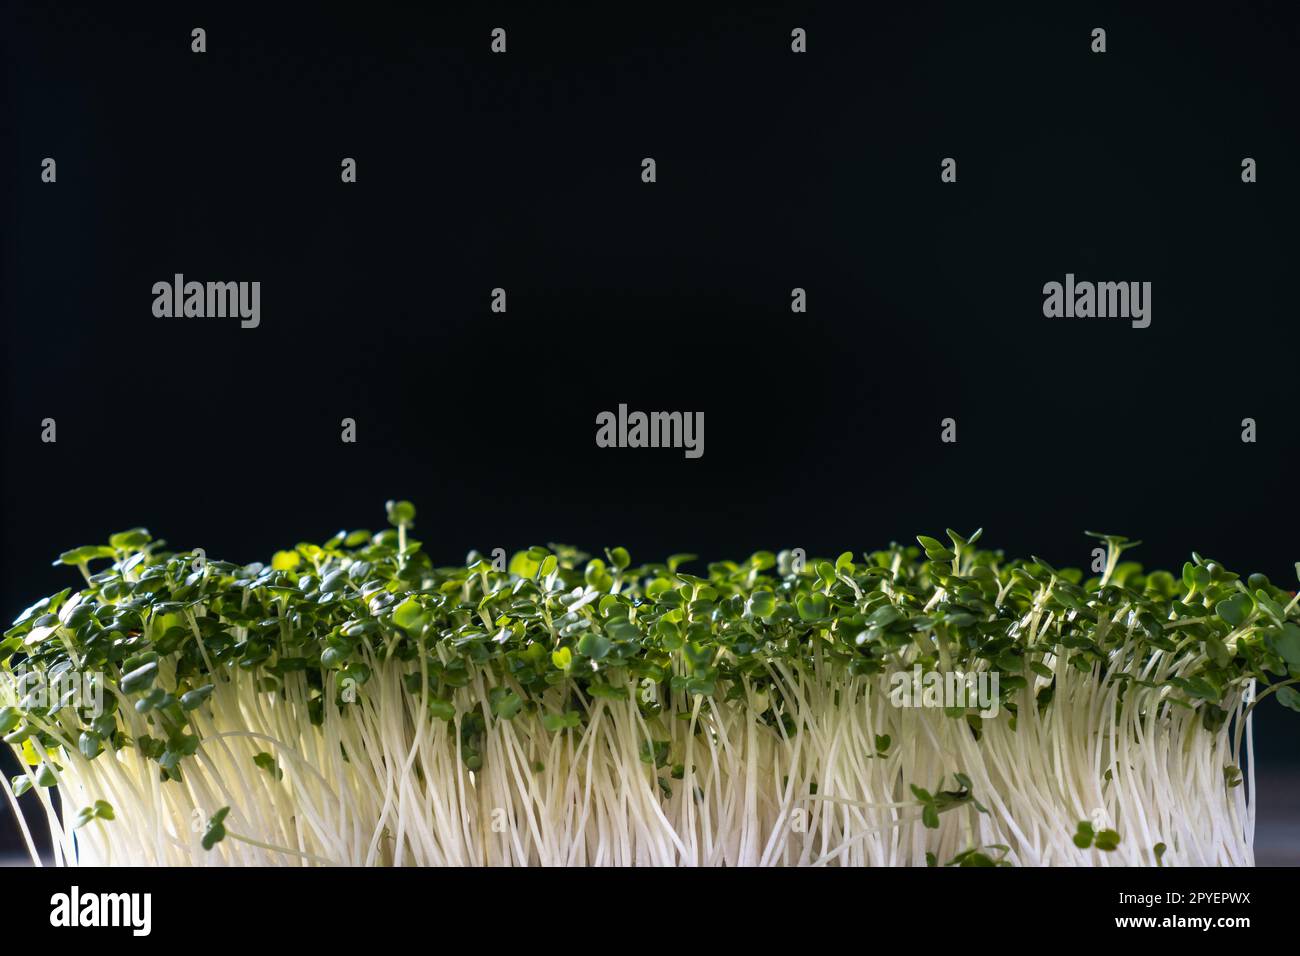 Mikrogrün-Anbau im Haushalt. Mikrogrüne Sprossen an der schwarzen Wand. Freier Platz für Text. Wachsende Stängel mit grünen Blättern. Stockfoto